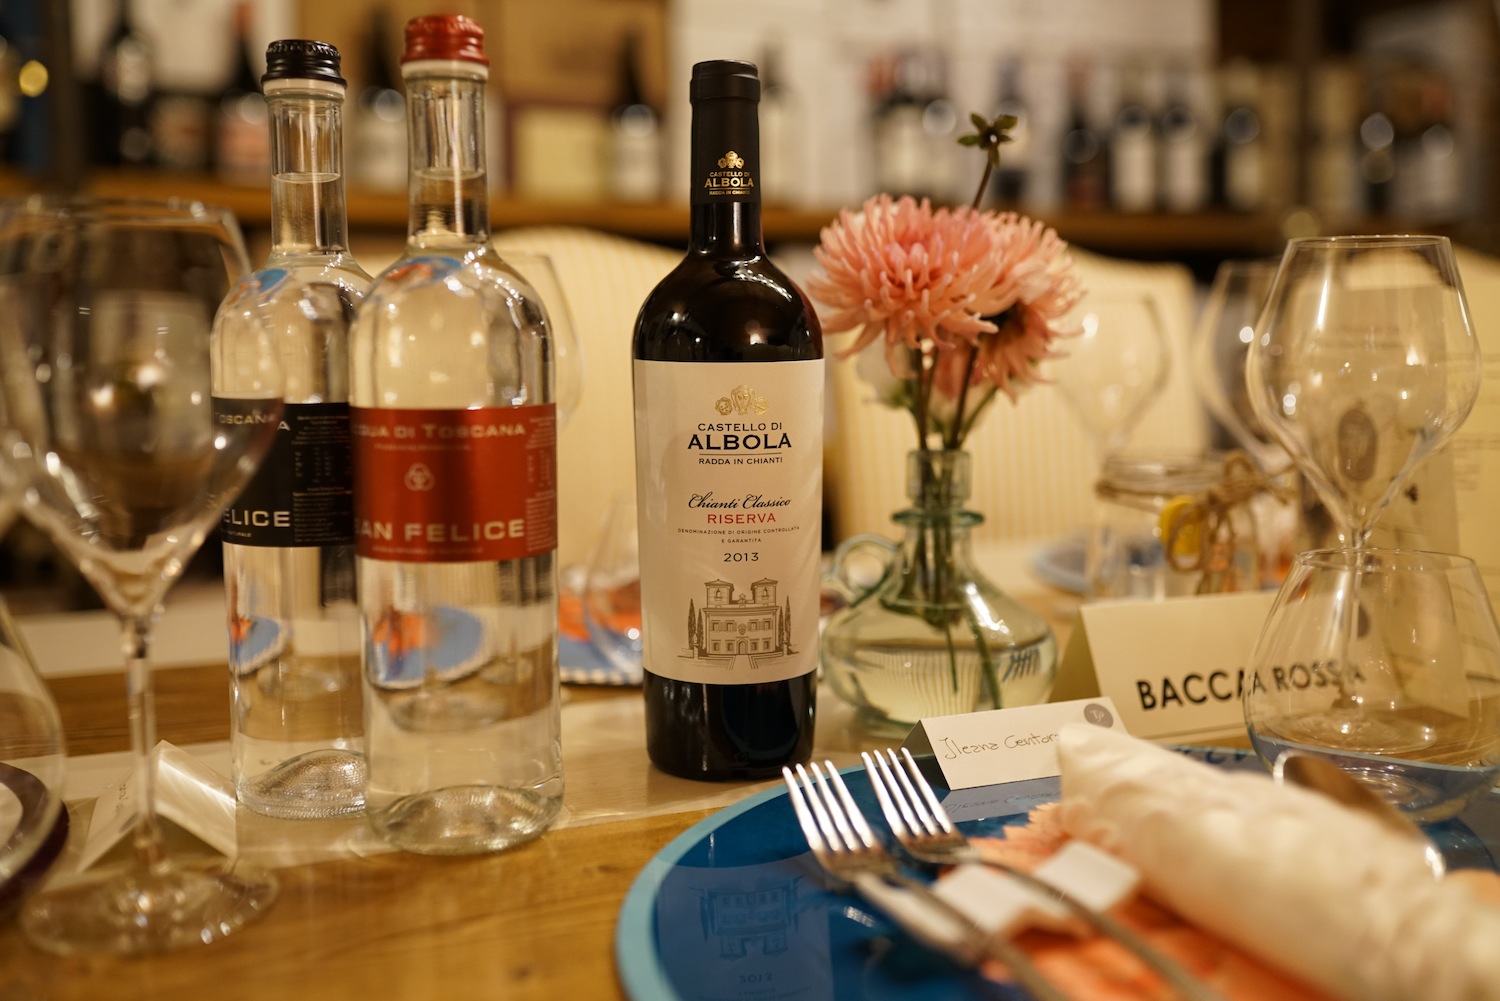 Tavolo apparecchiato con eleganza: in vista bottiglia di vino del CAlbiola e 2 di Acqua San Felice